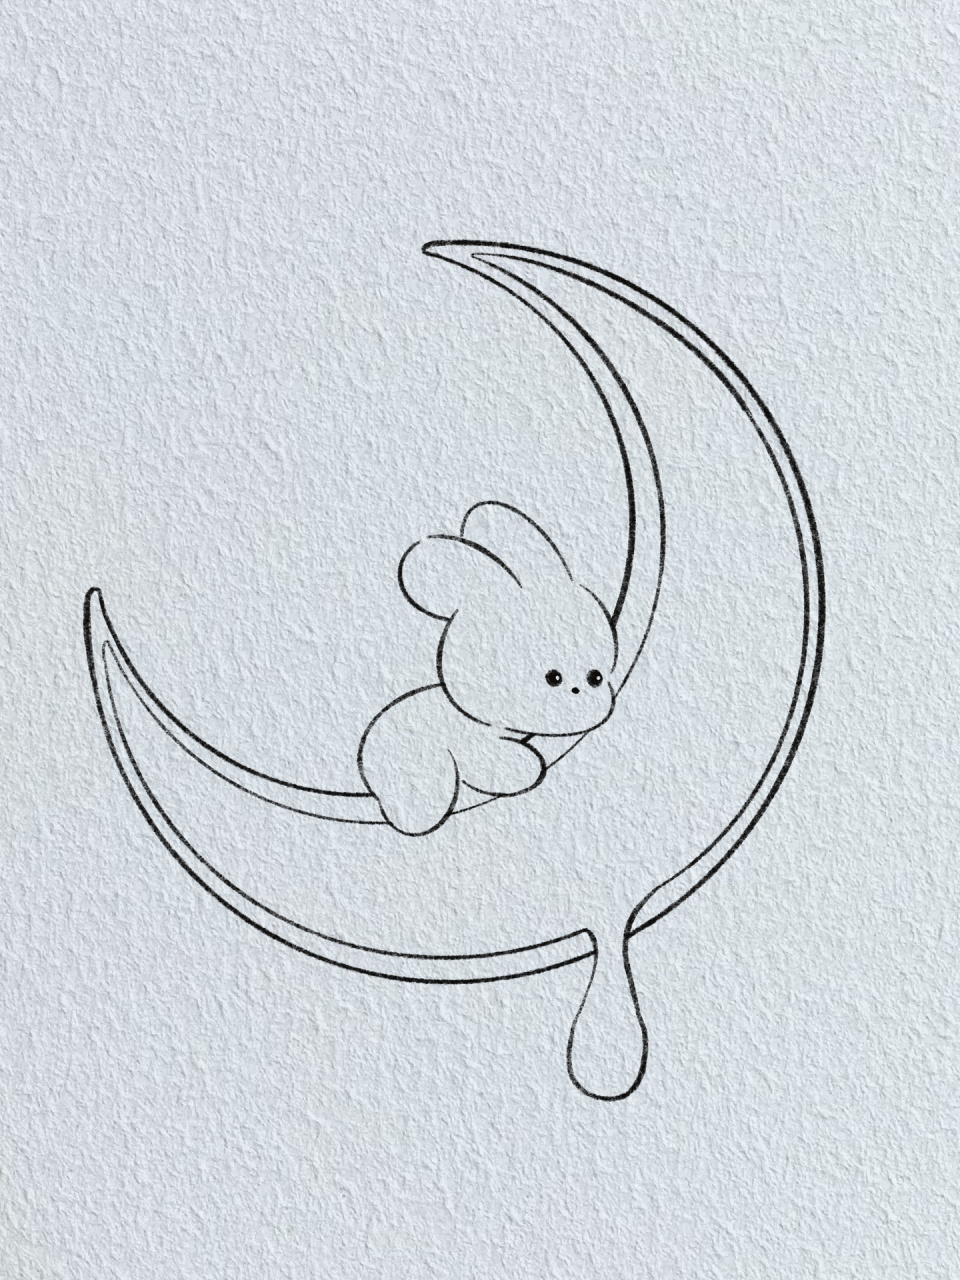 兔子抱月亮图片简笔画图片